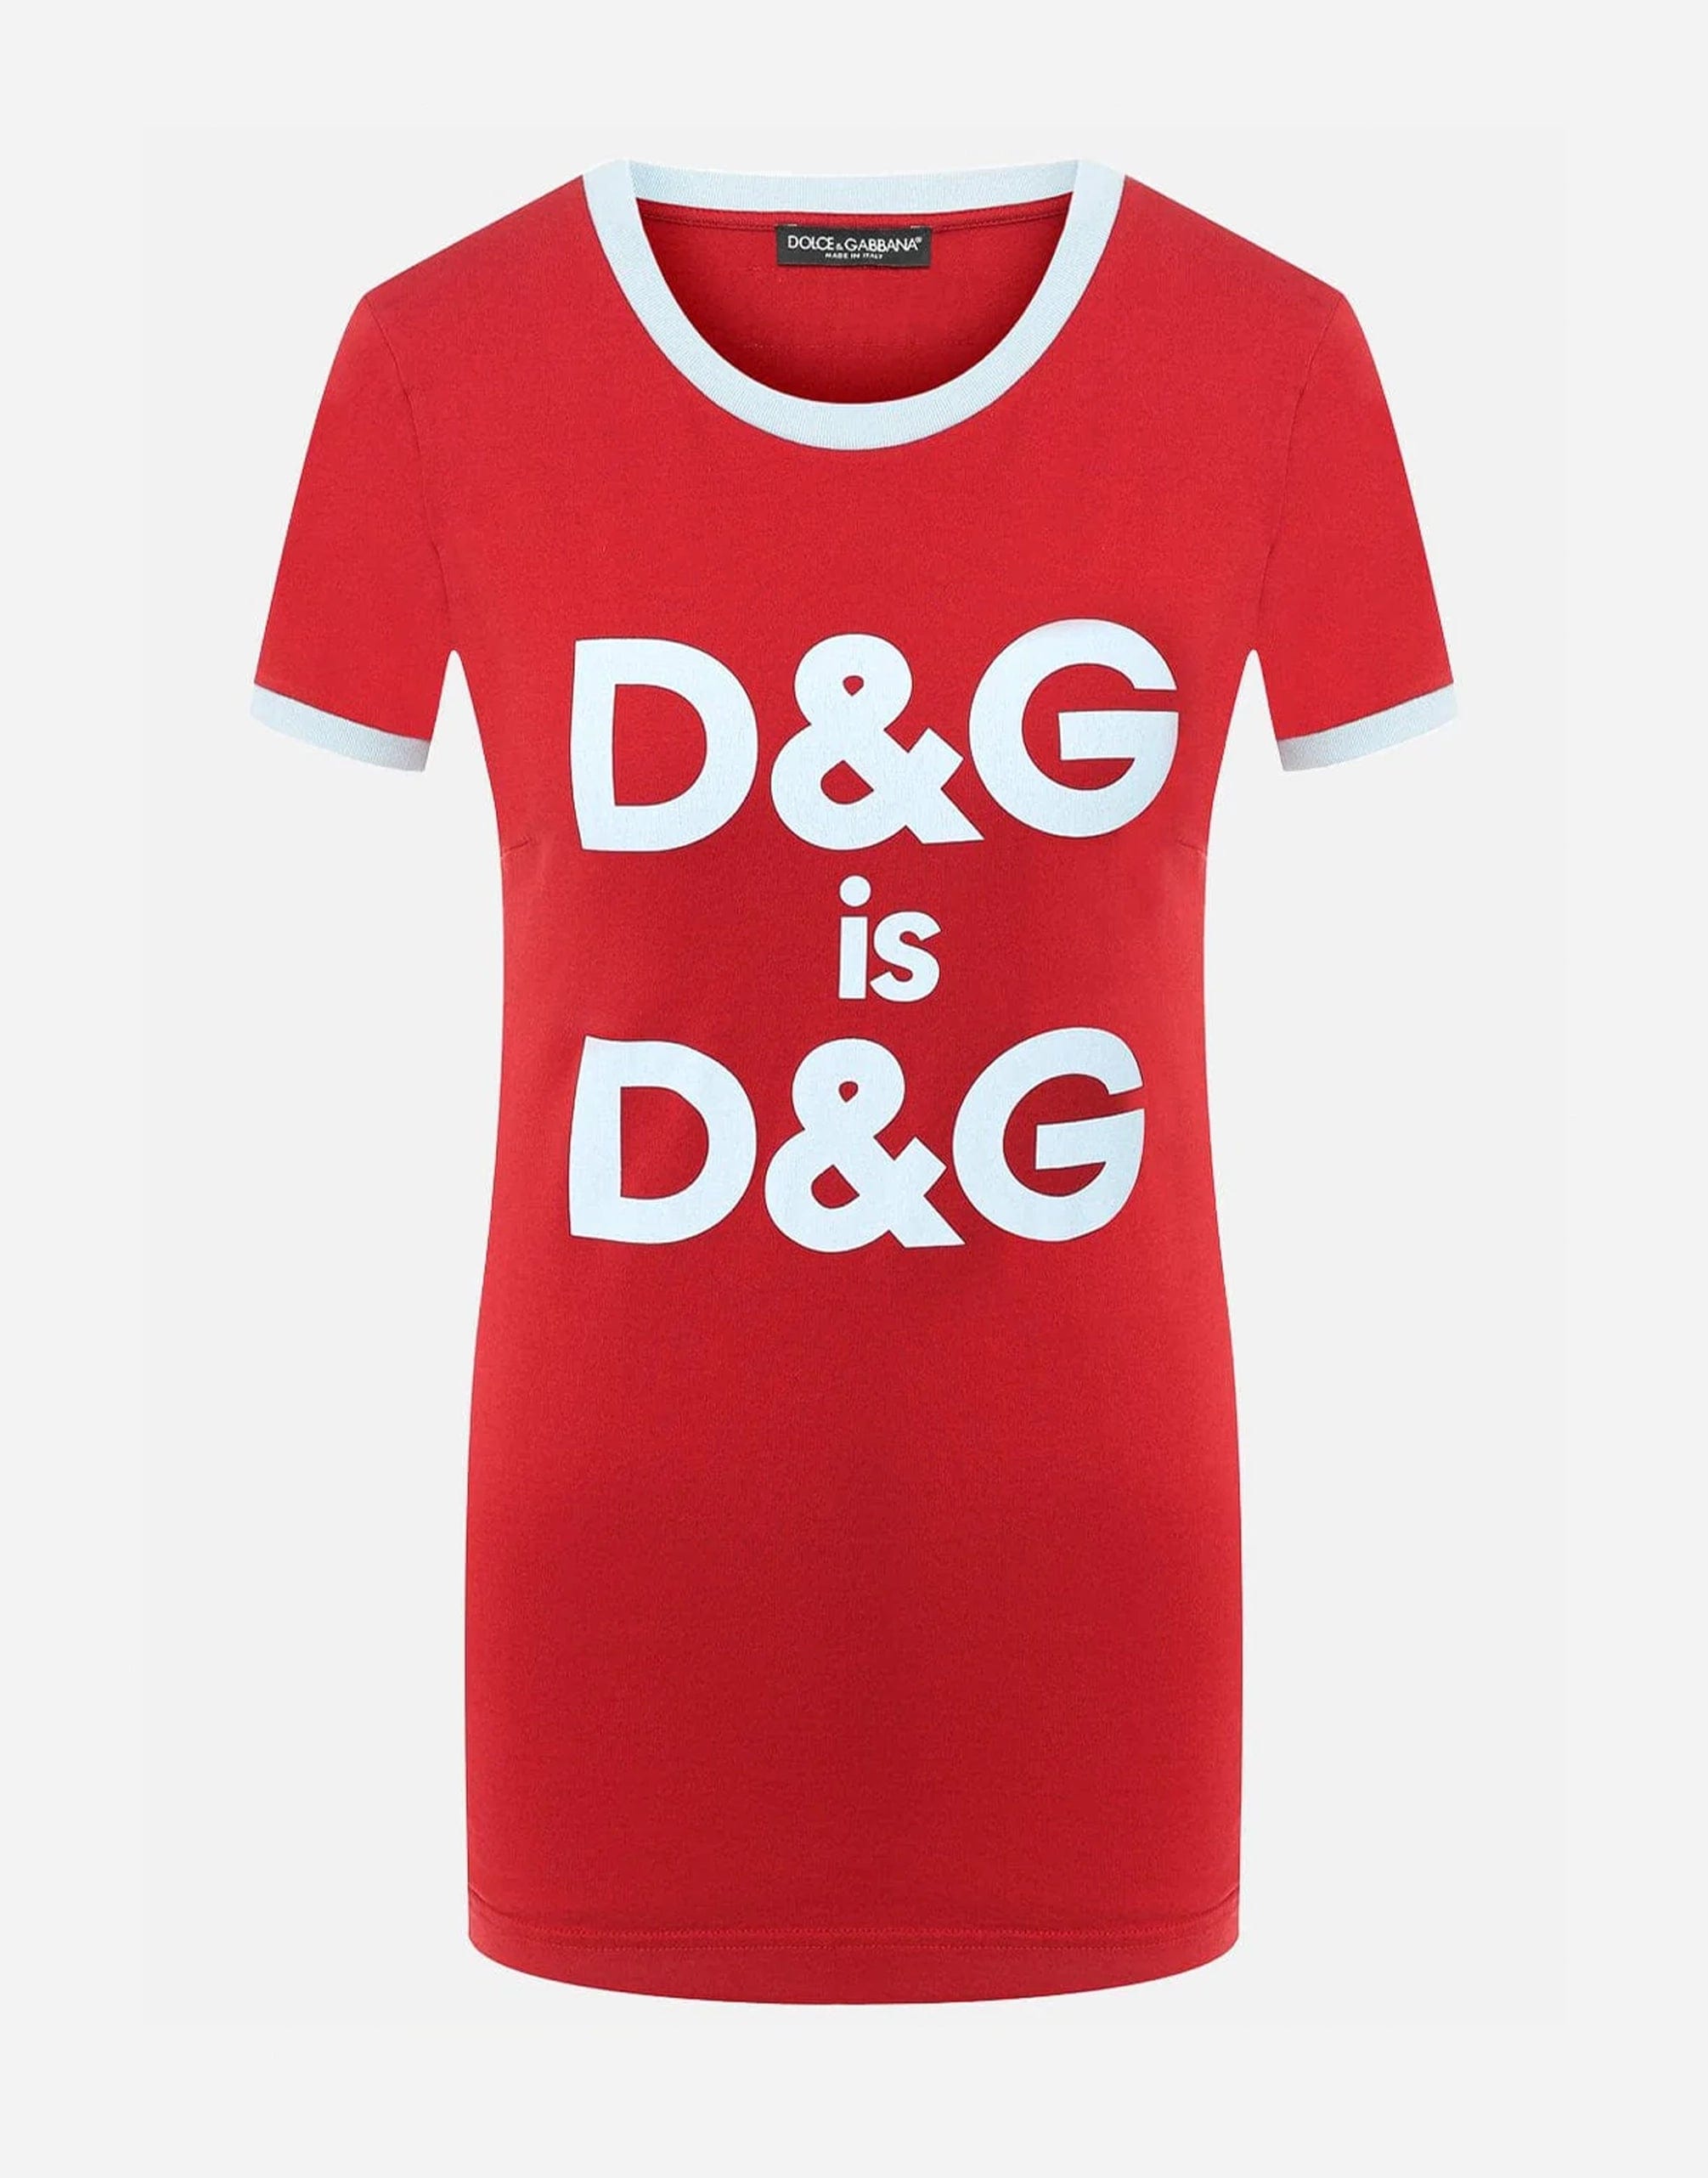 Dolce & Gabbana D&G is D&G Print T-Shirt